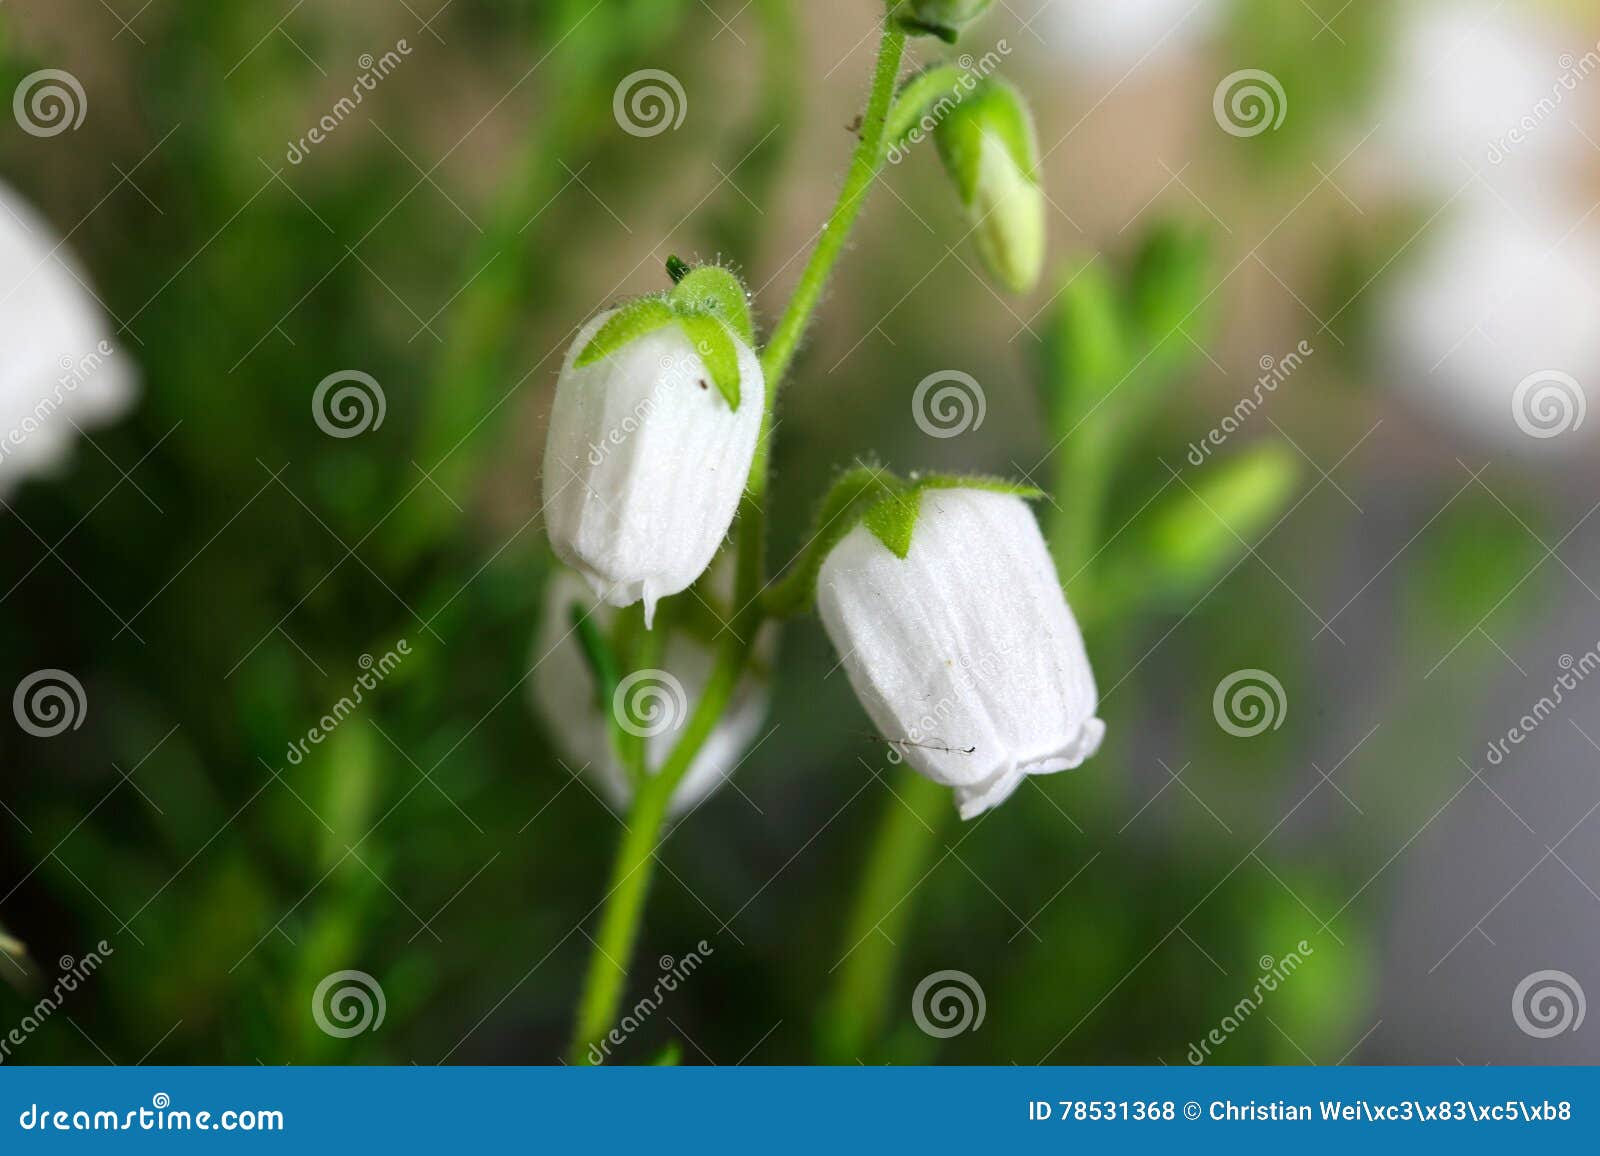 flowers of daboecia cantabrica